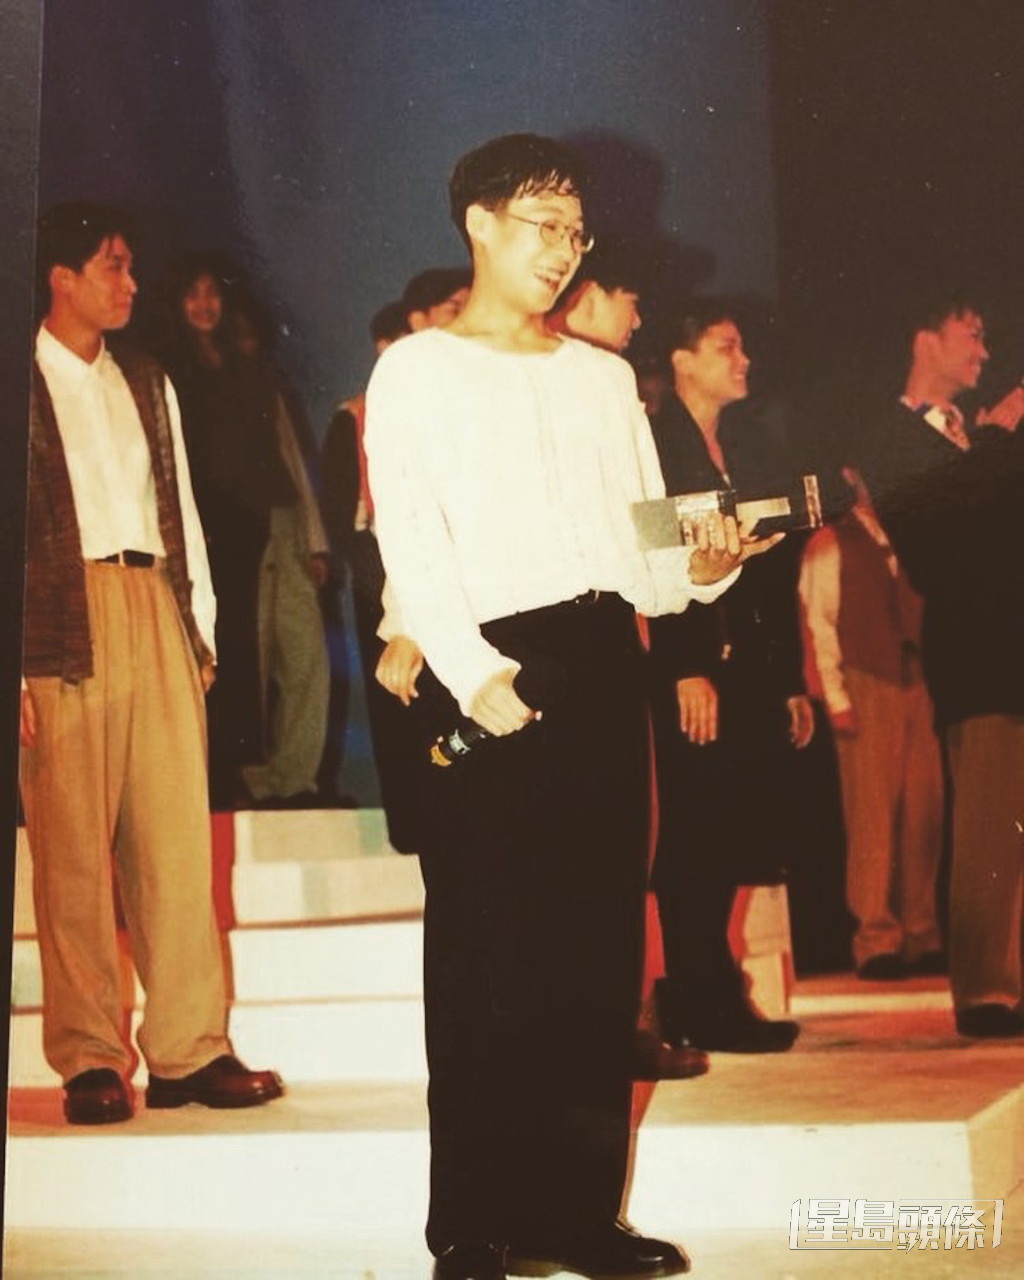 1994年，丁文俊贏得由加拿大溫哥華新時代電視主辦的首屆《新秀歌唱大賽溫哥華選拔賽》的冠軍。